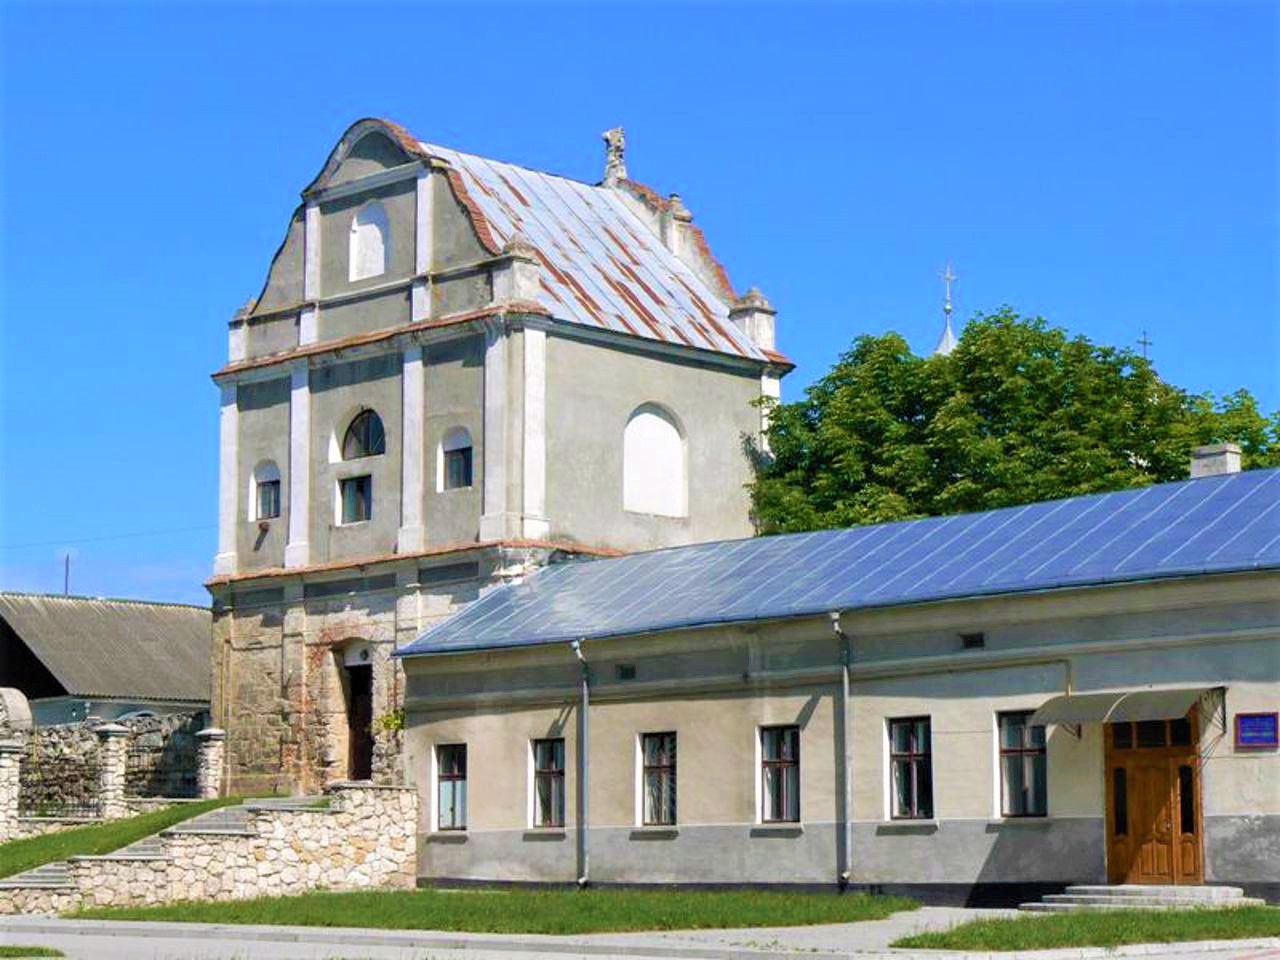 Assumption Church, Zbarazh